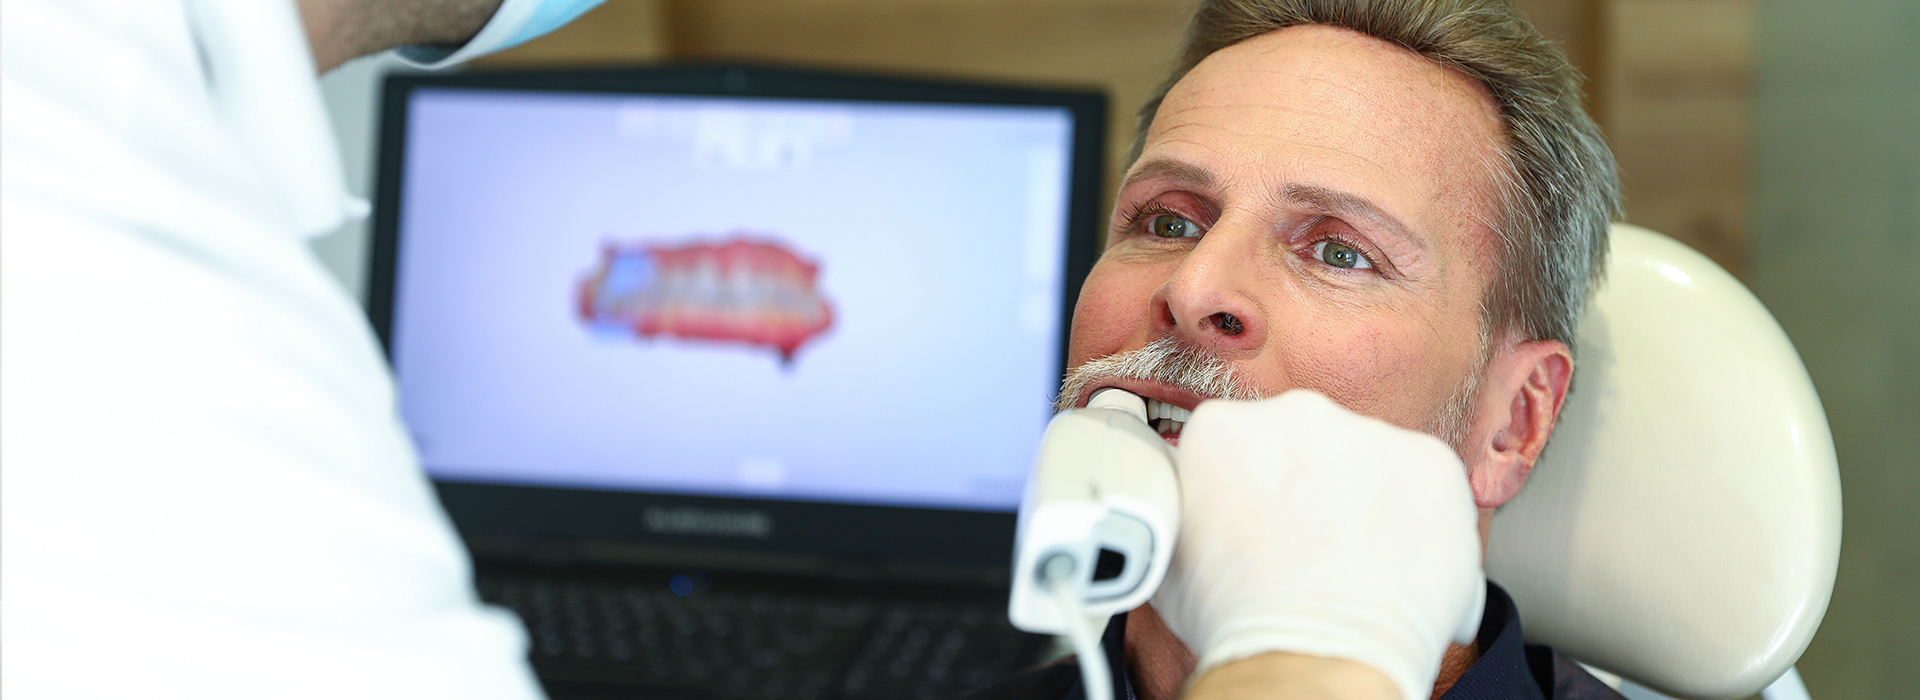 St. John Smiles Family Dentistry | Teeth Whitening, Implant Dentistry and Laser Dentistry